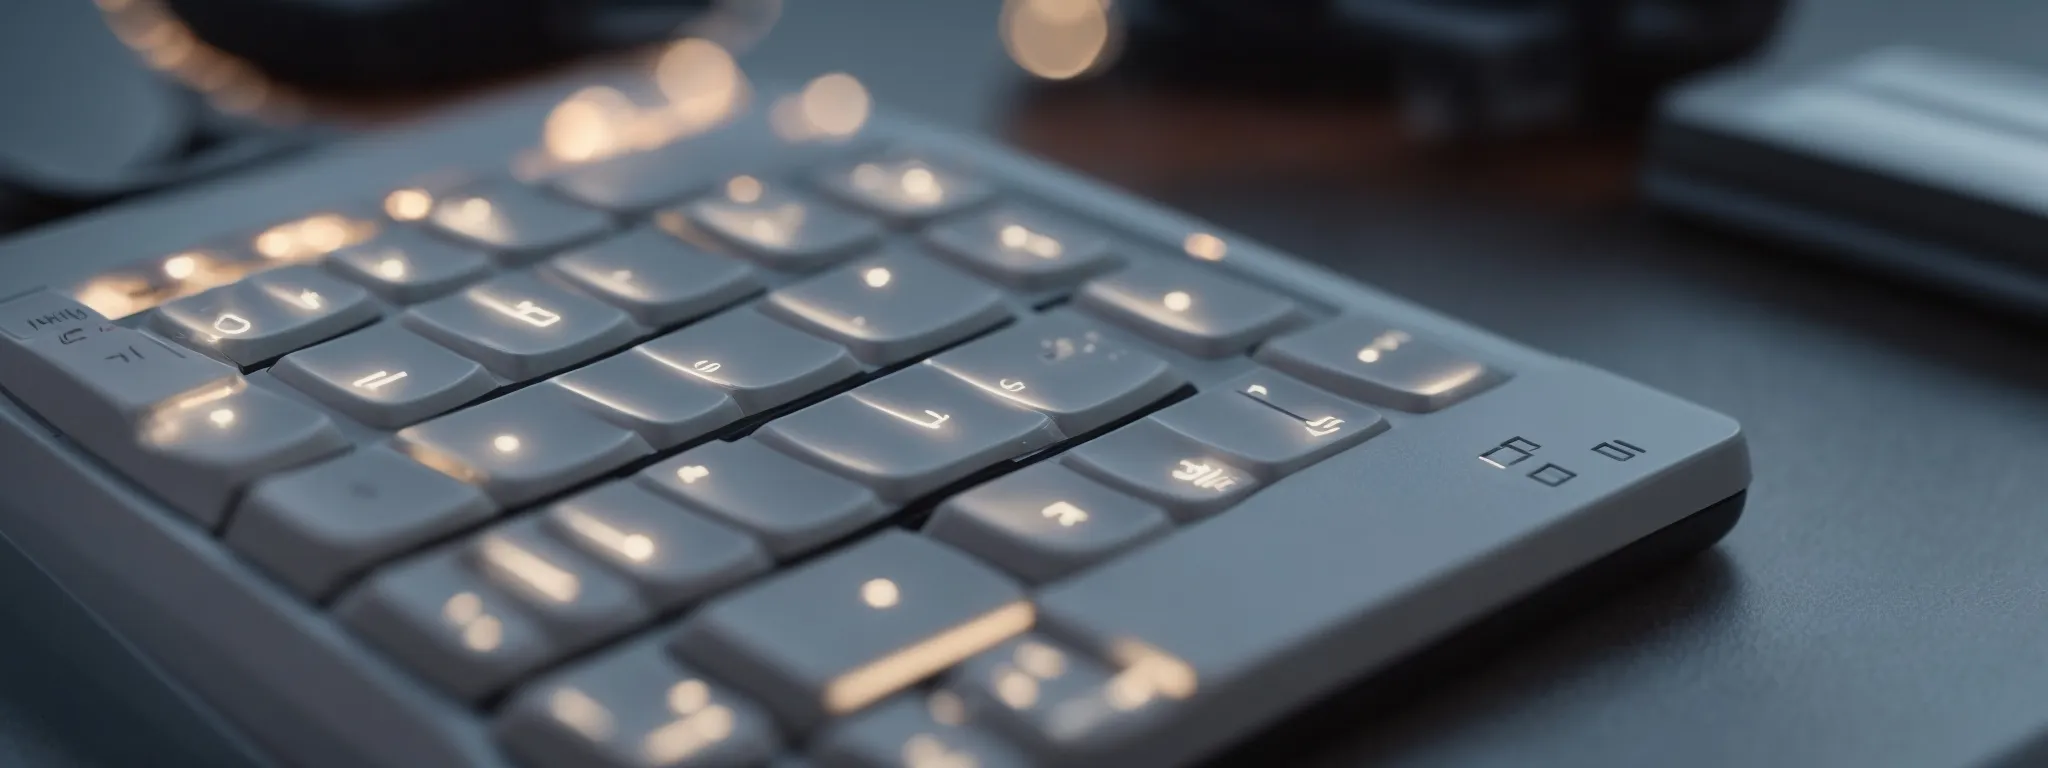 a keyboard with an illuminated 